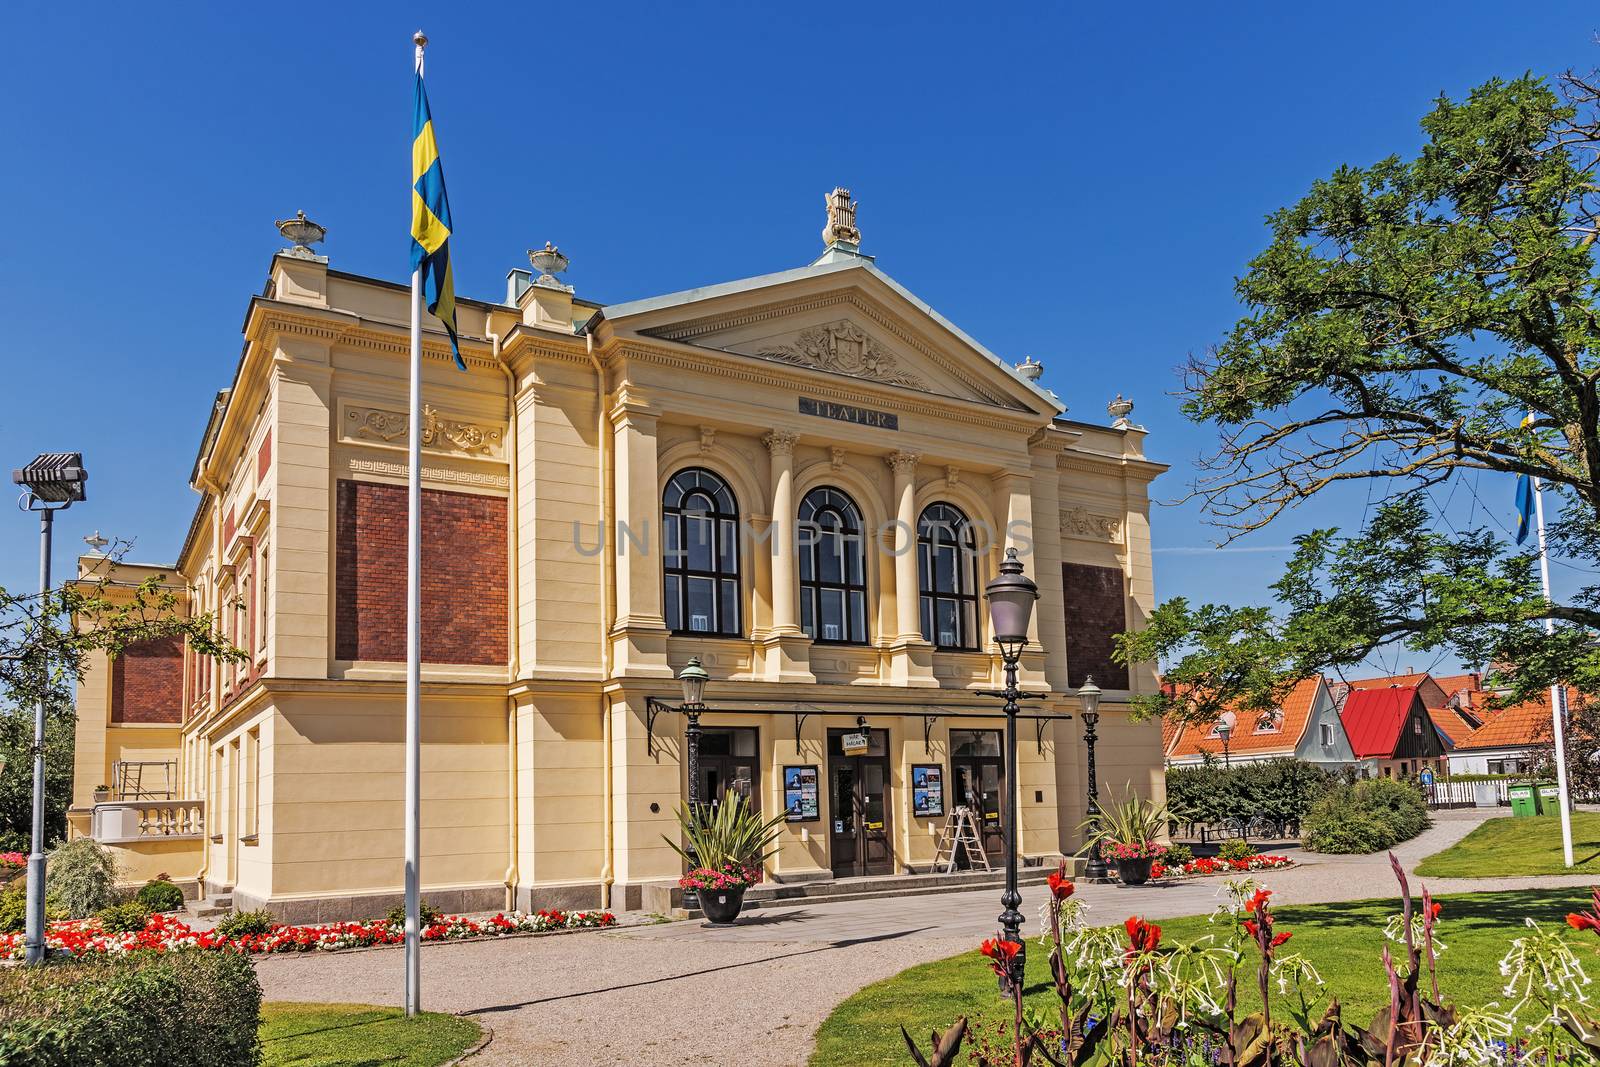 Ystad Theater by pawel_szczepanski